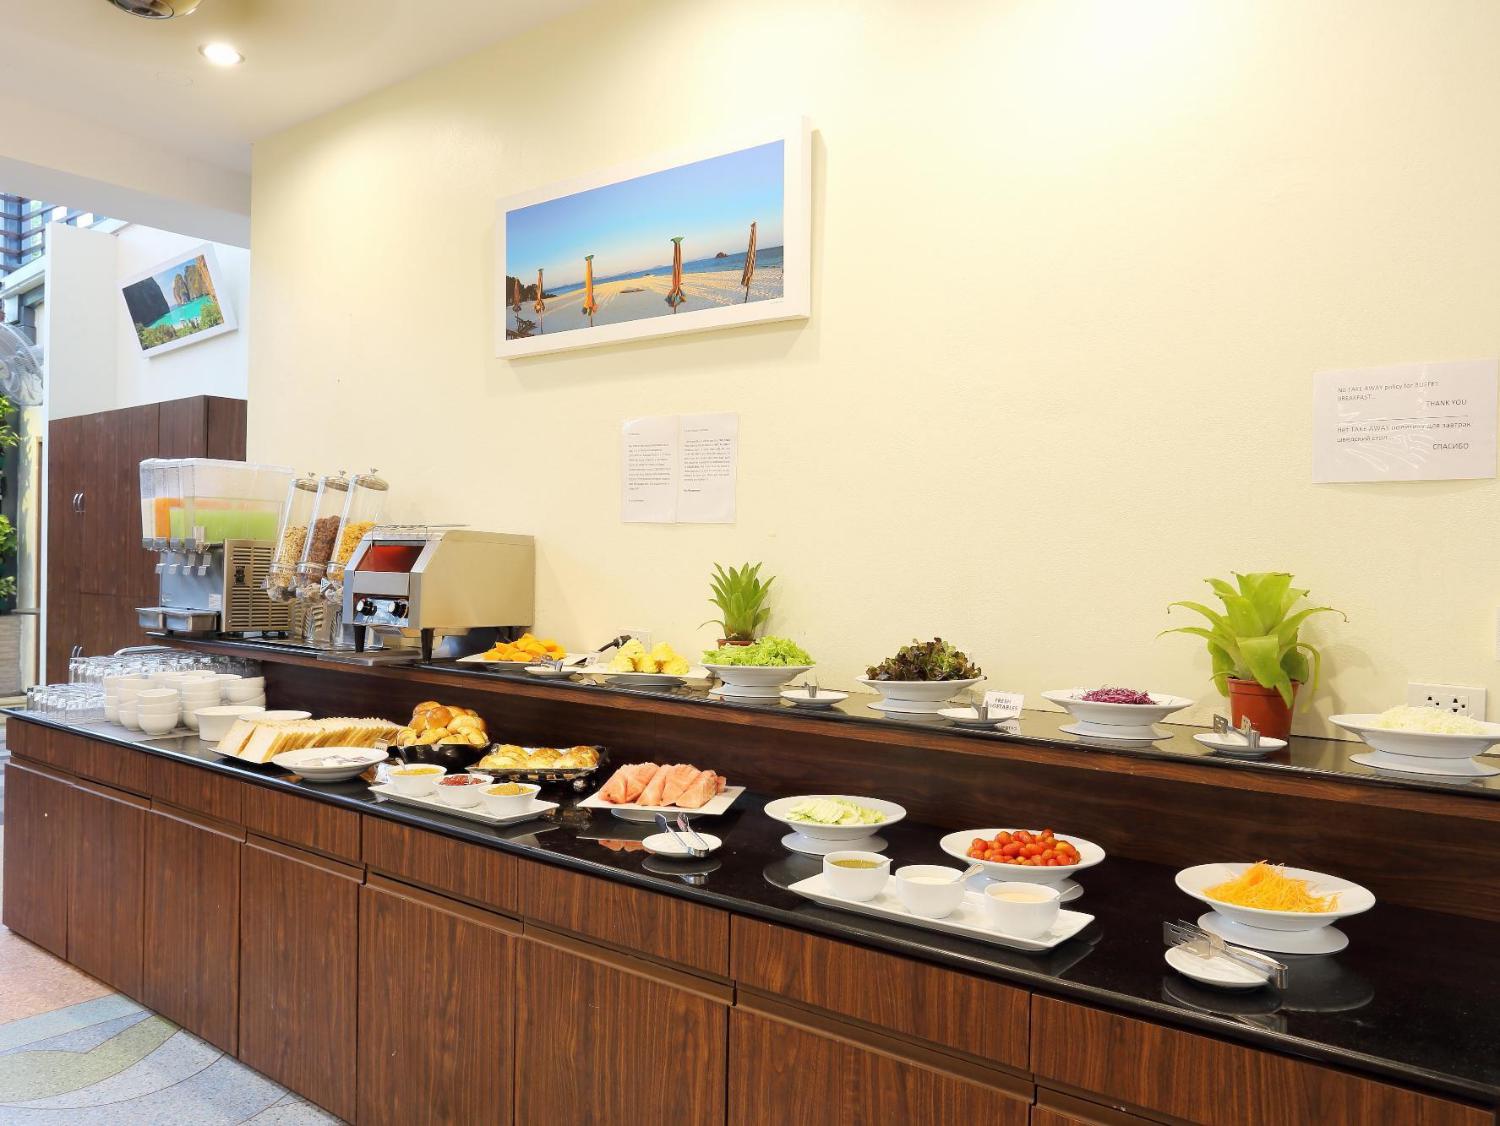 ON Hotel Phuket - Image 4